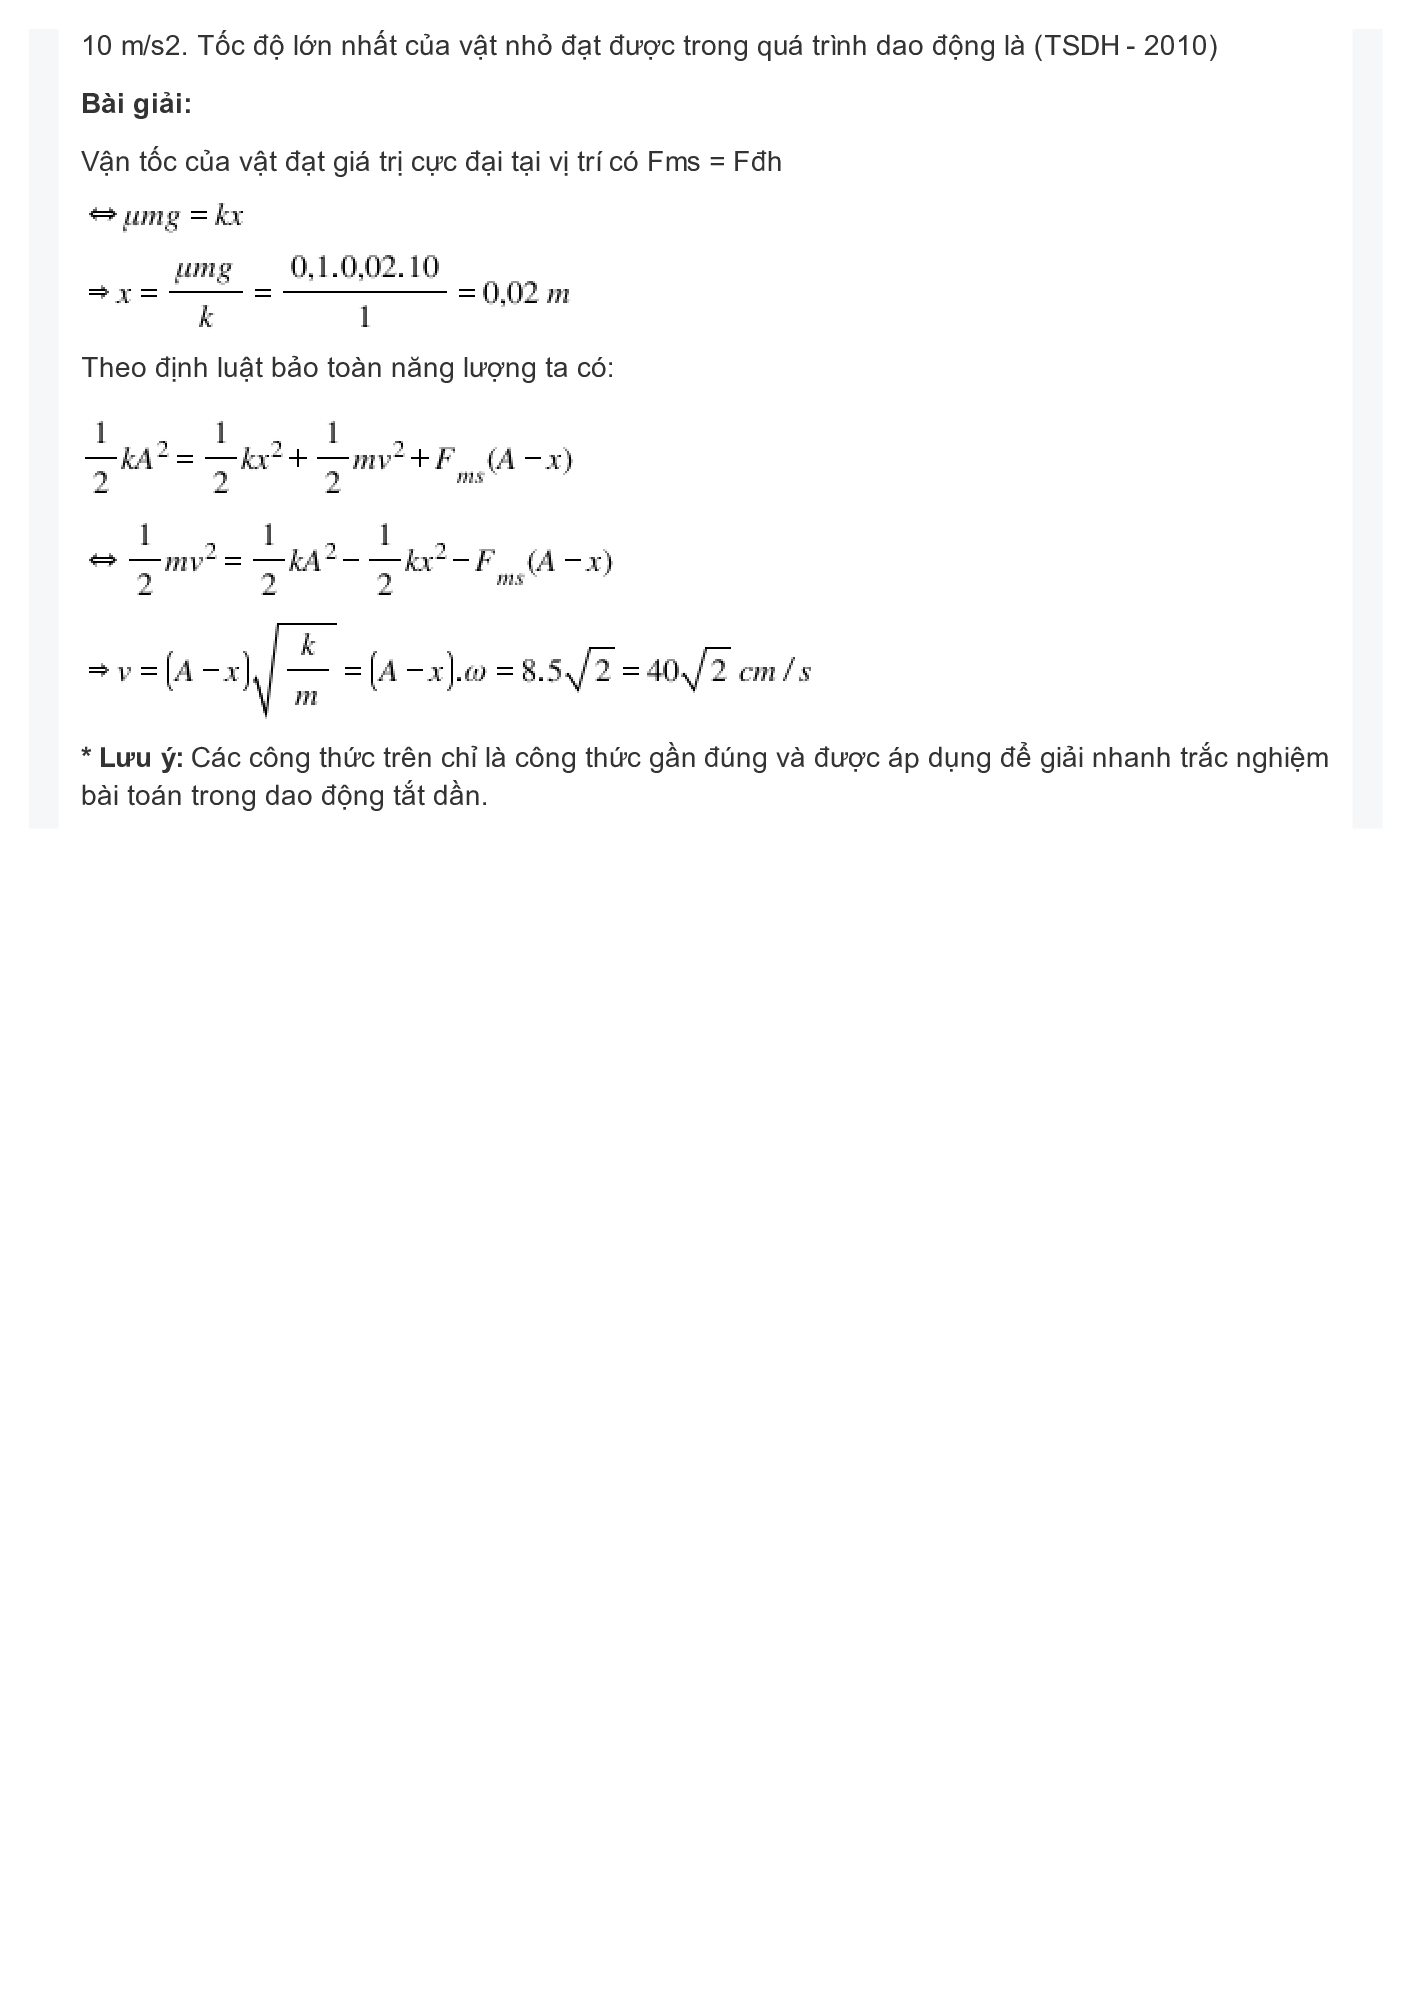 Phương pháp giải 7 dạng toán Dao động tắt dần (trang 6)